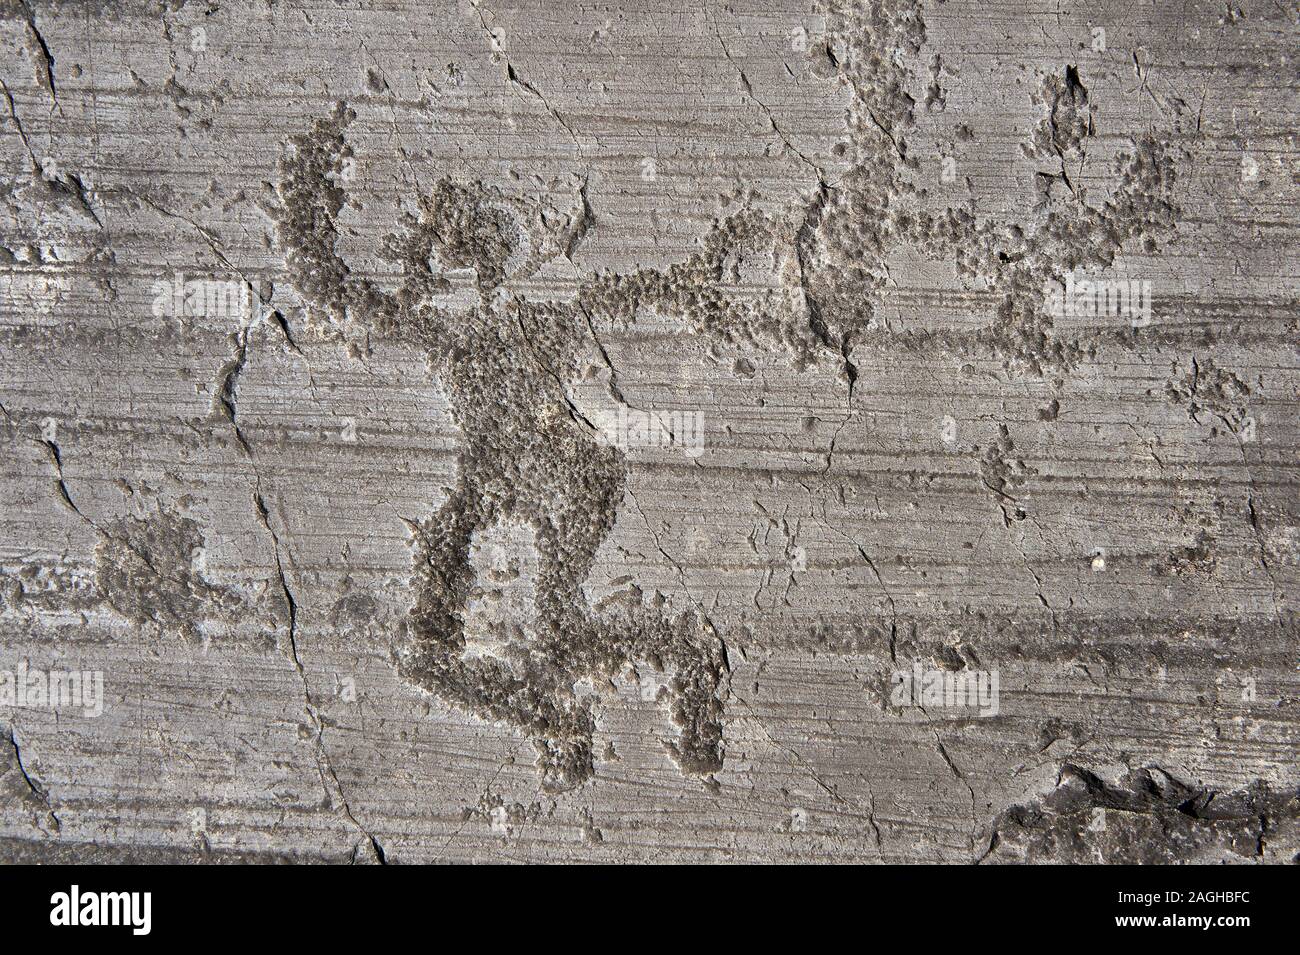 Petroglyph, Rock, Carving, einer tanzenden Krieger holding Schwerter und Schilde. Von den alten Camuni Menschen in der eisenzeit zwischen 1000-1600 v. Chr. geschnitzt. R Stockfoto